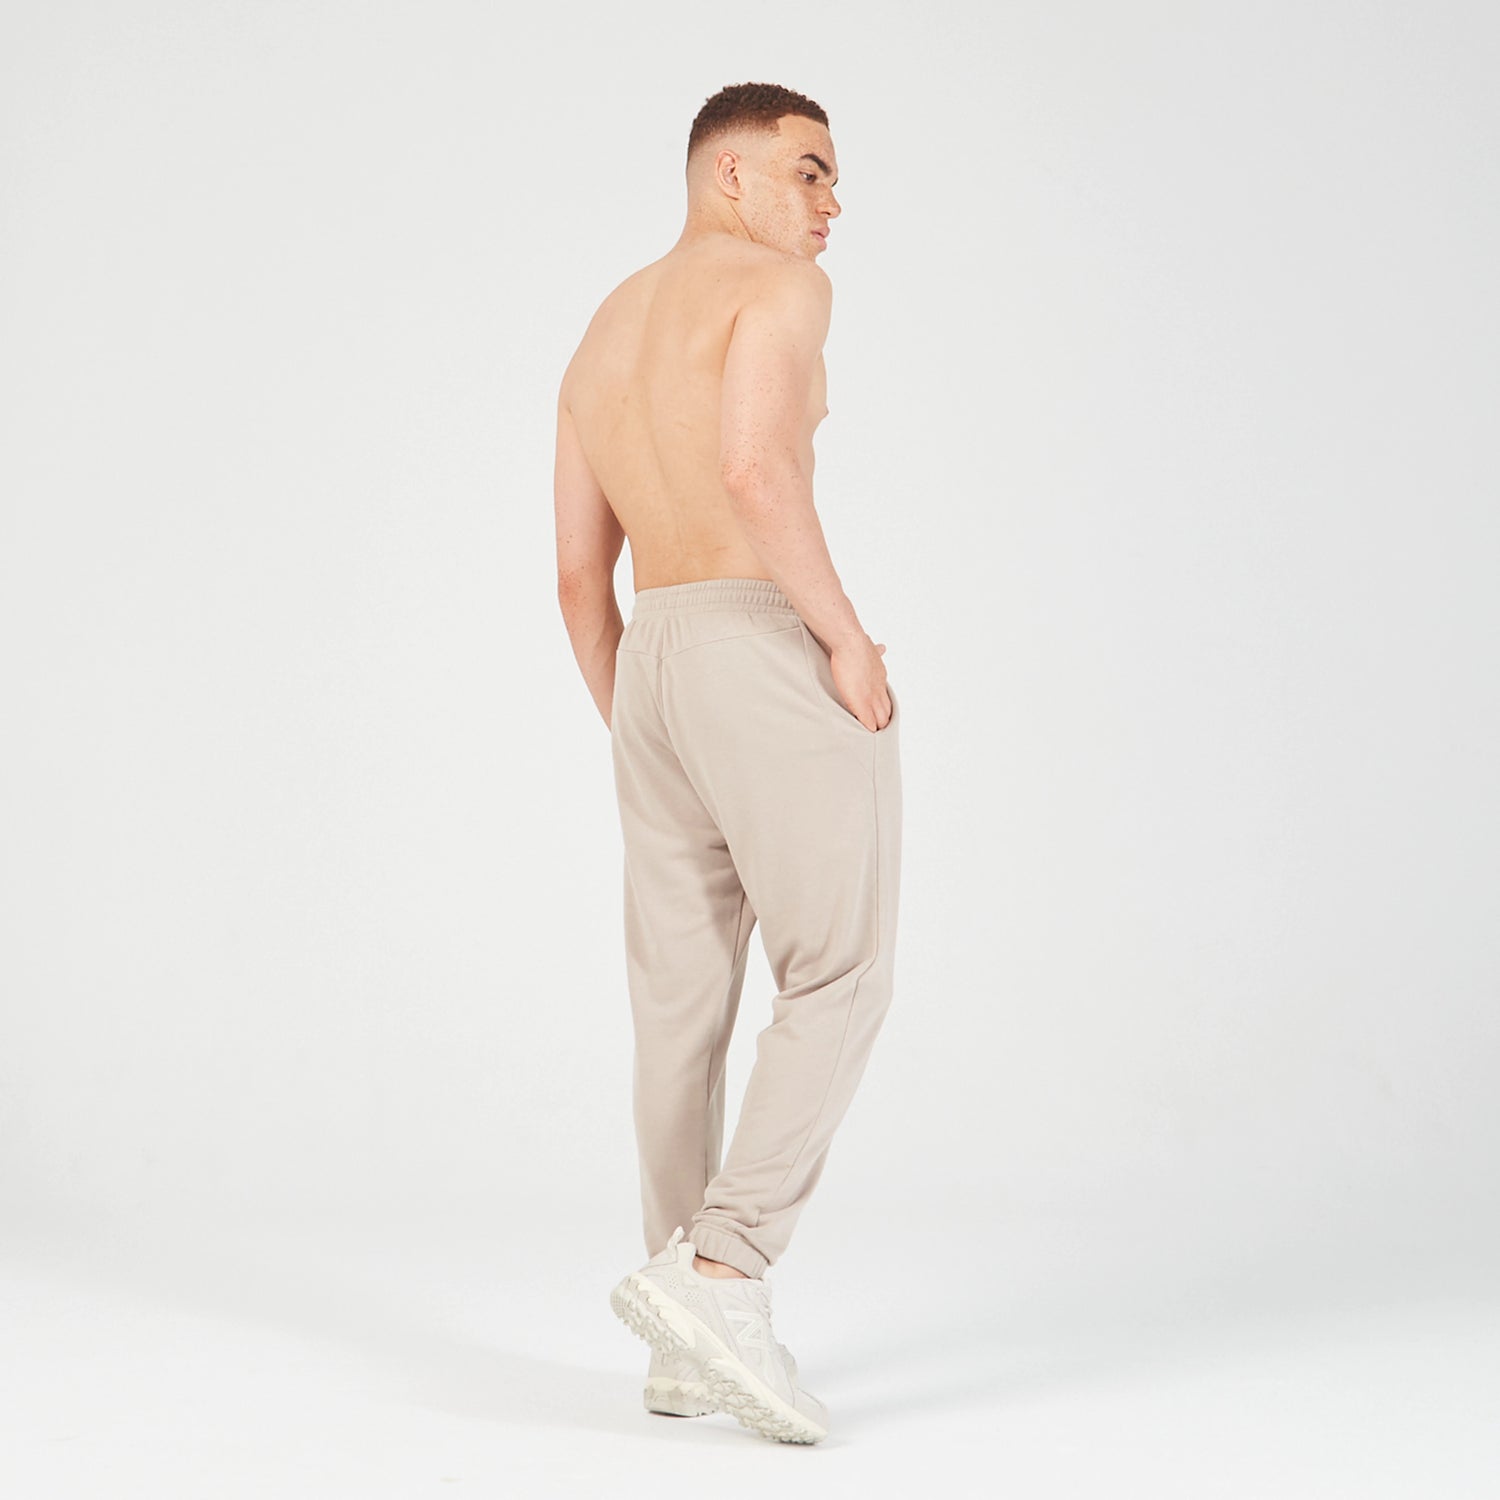 squatwolf-gym-wear-essential-jogger-pant-cobblestone-workout-pants-for-men